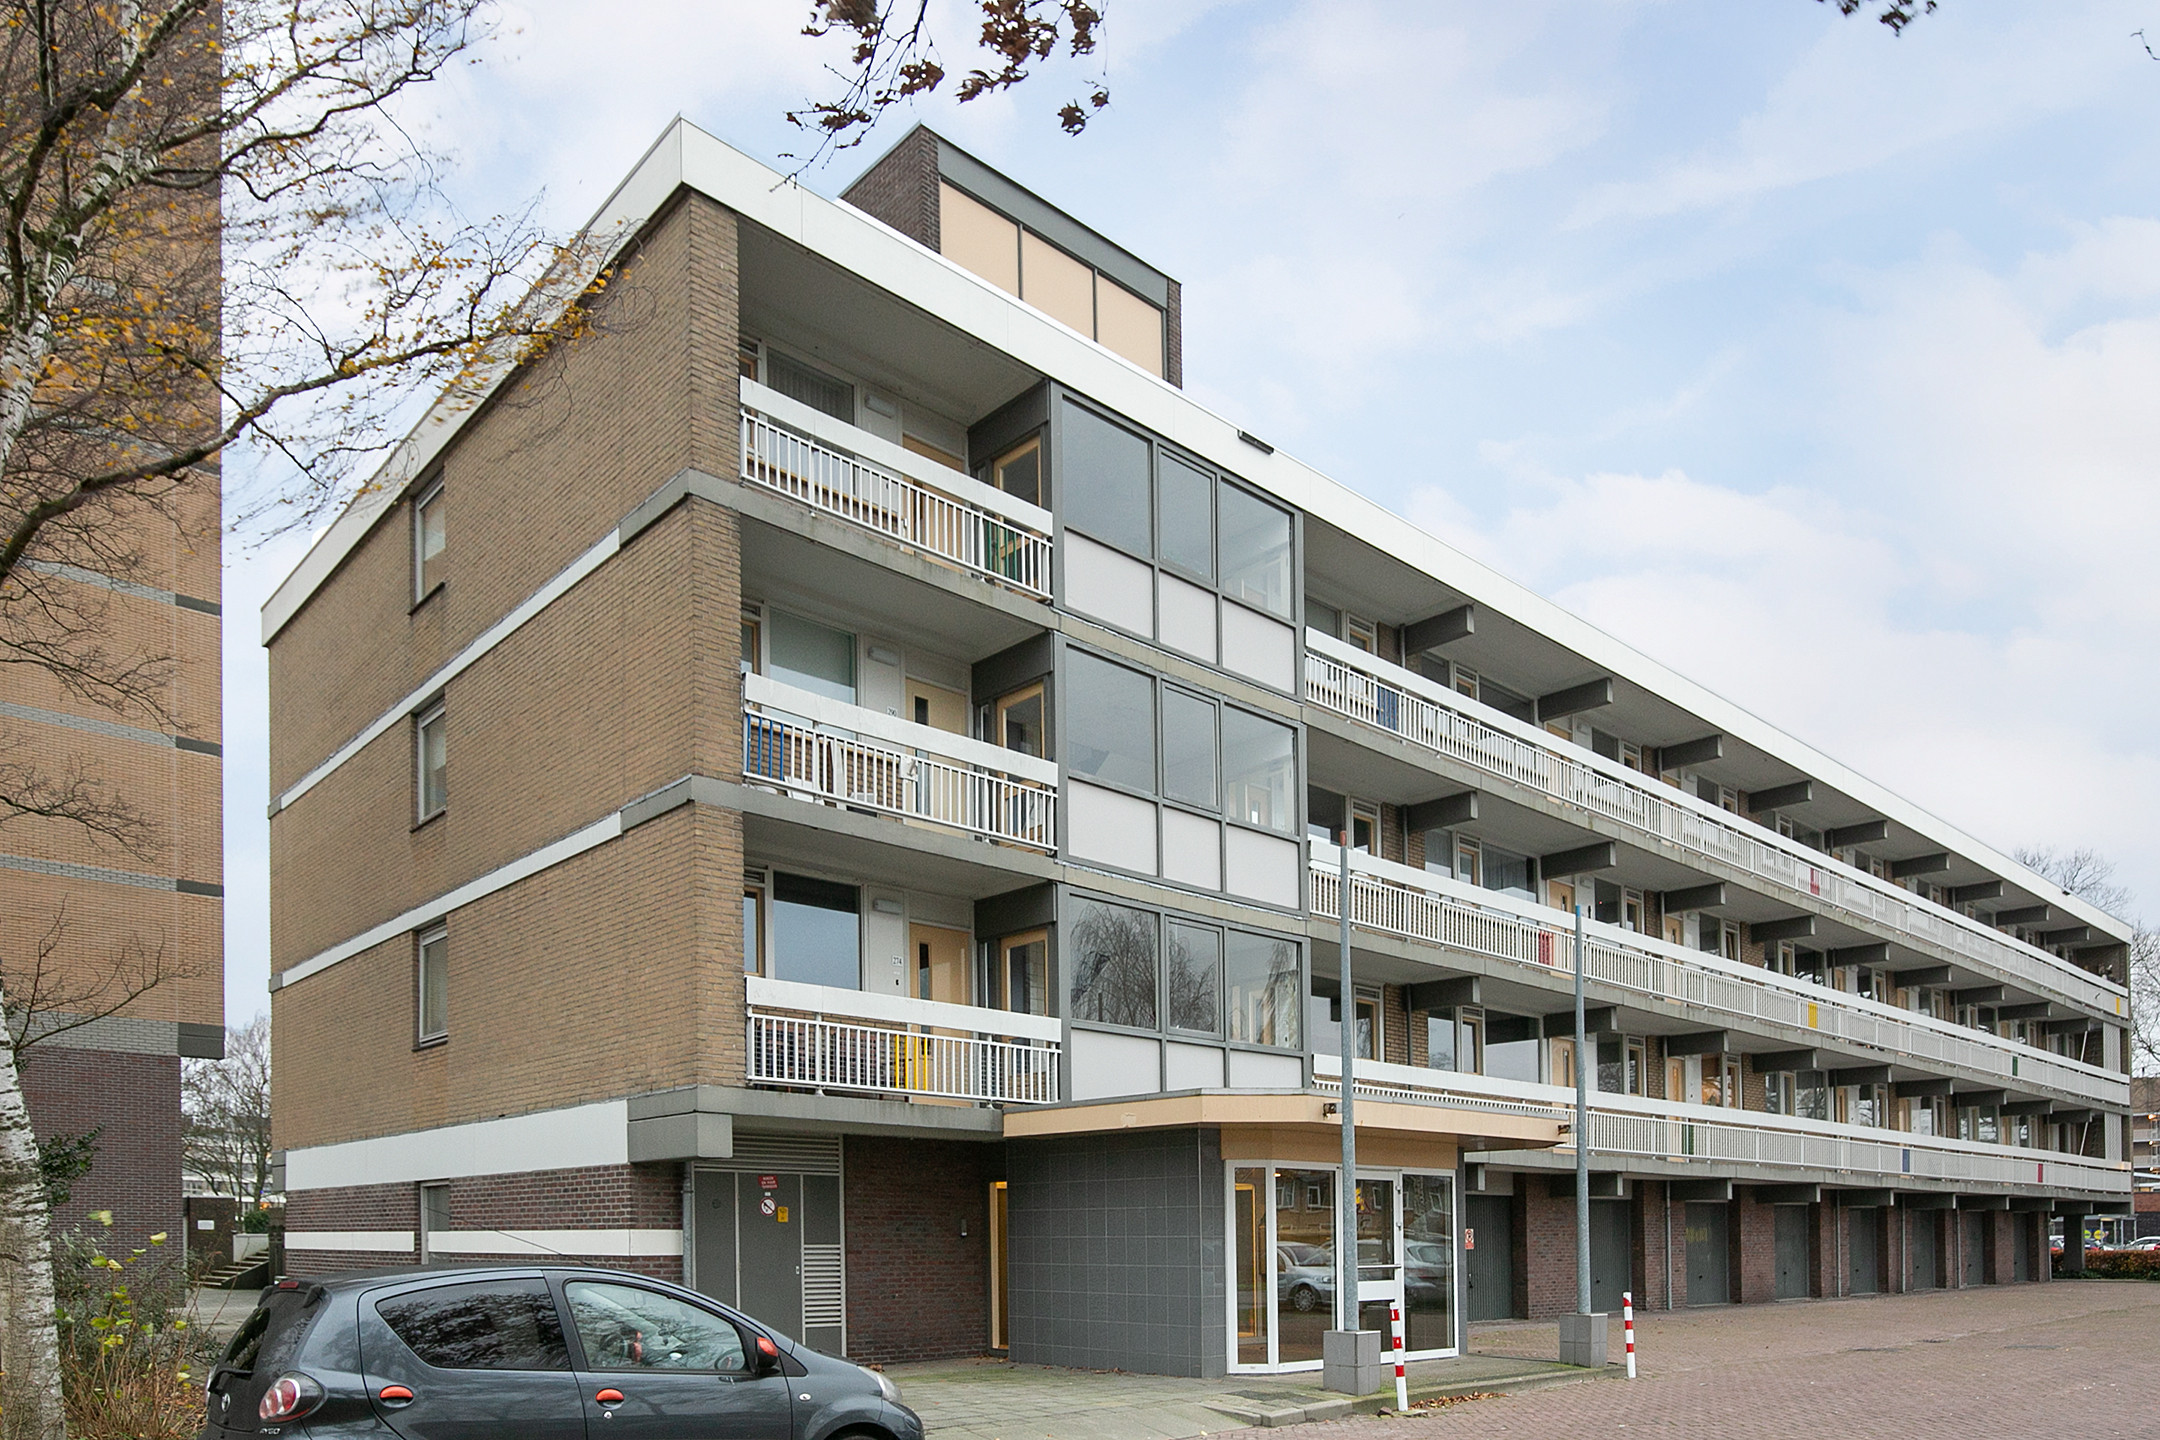 Bekijk for 1/21 van apartment in Hilversum